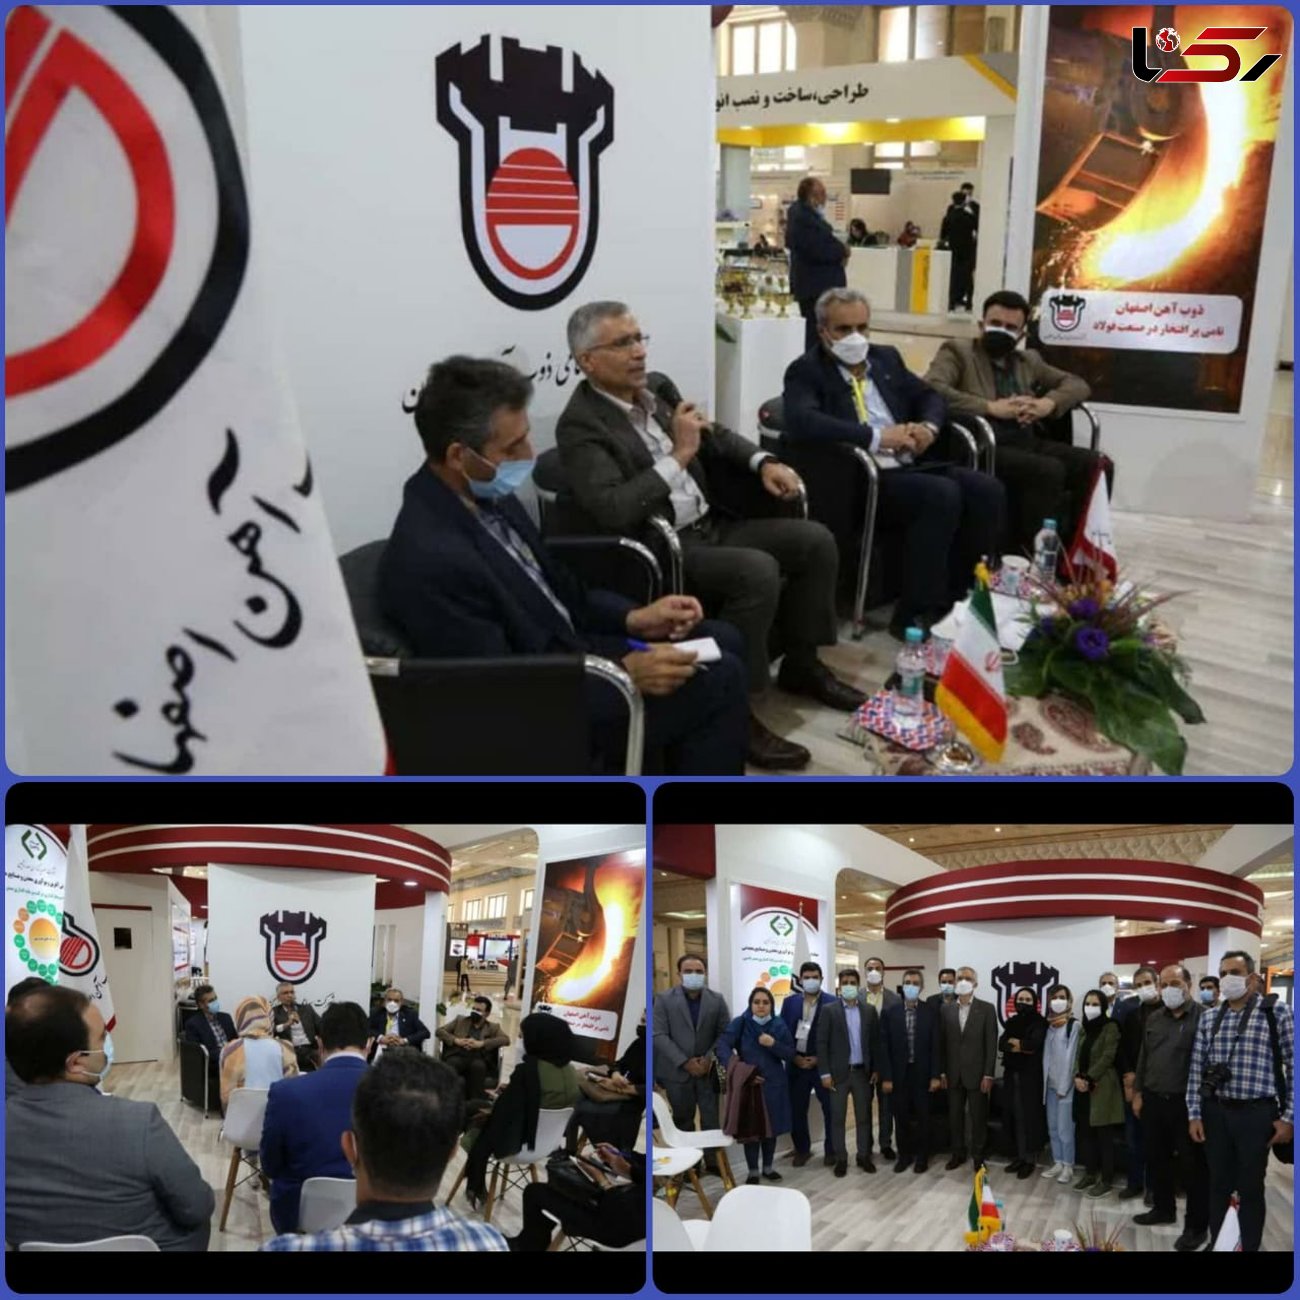 رکورد ذوب آهن اصفهان در سودآوری حاصل توسعه صادرات و تولید محصولات با ارزش افزوده بالاتر